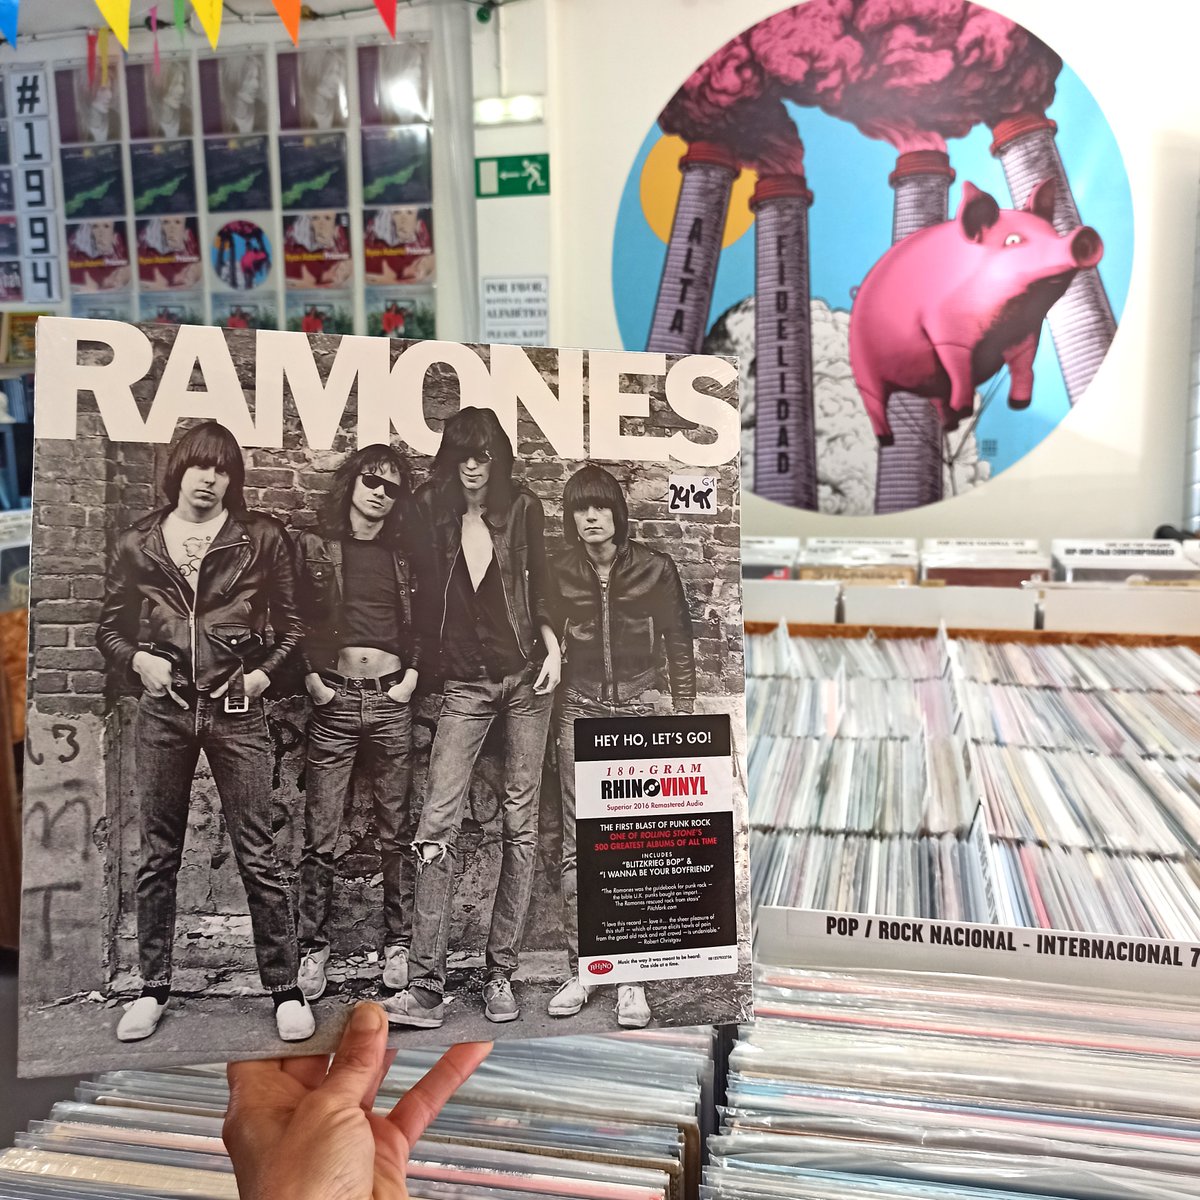 Tal día como hoy hace 48 años se publicó uno de los álbumes más influyentes del  punk y el rock en general #Ramones #discazos #DiscosDeVinilo #TiendaDeDiscos #Vinilos #33rpm #LongPlay #VinylShop #VinylRecords #RecordStore #VinylPorn #Vinyls #VinylLovers #VinylCollector